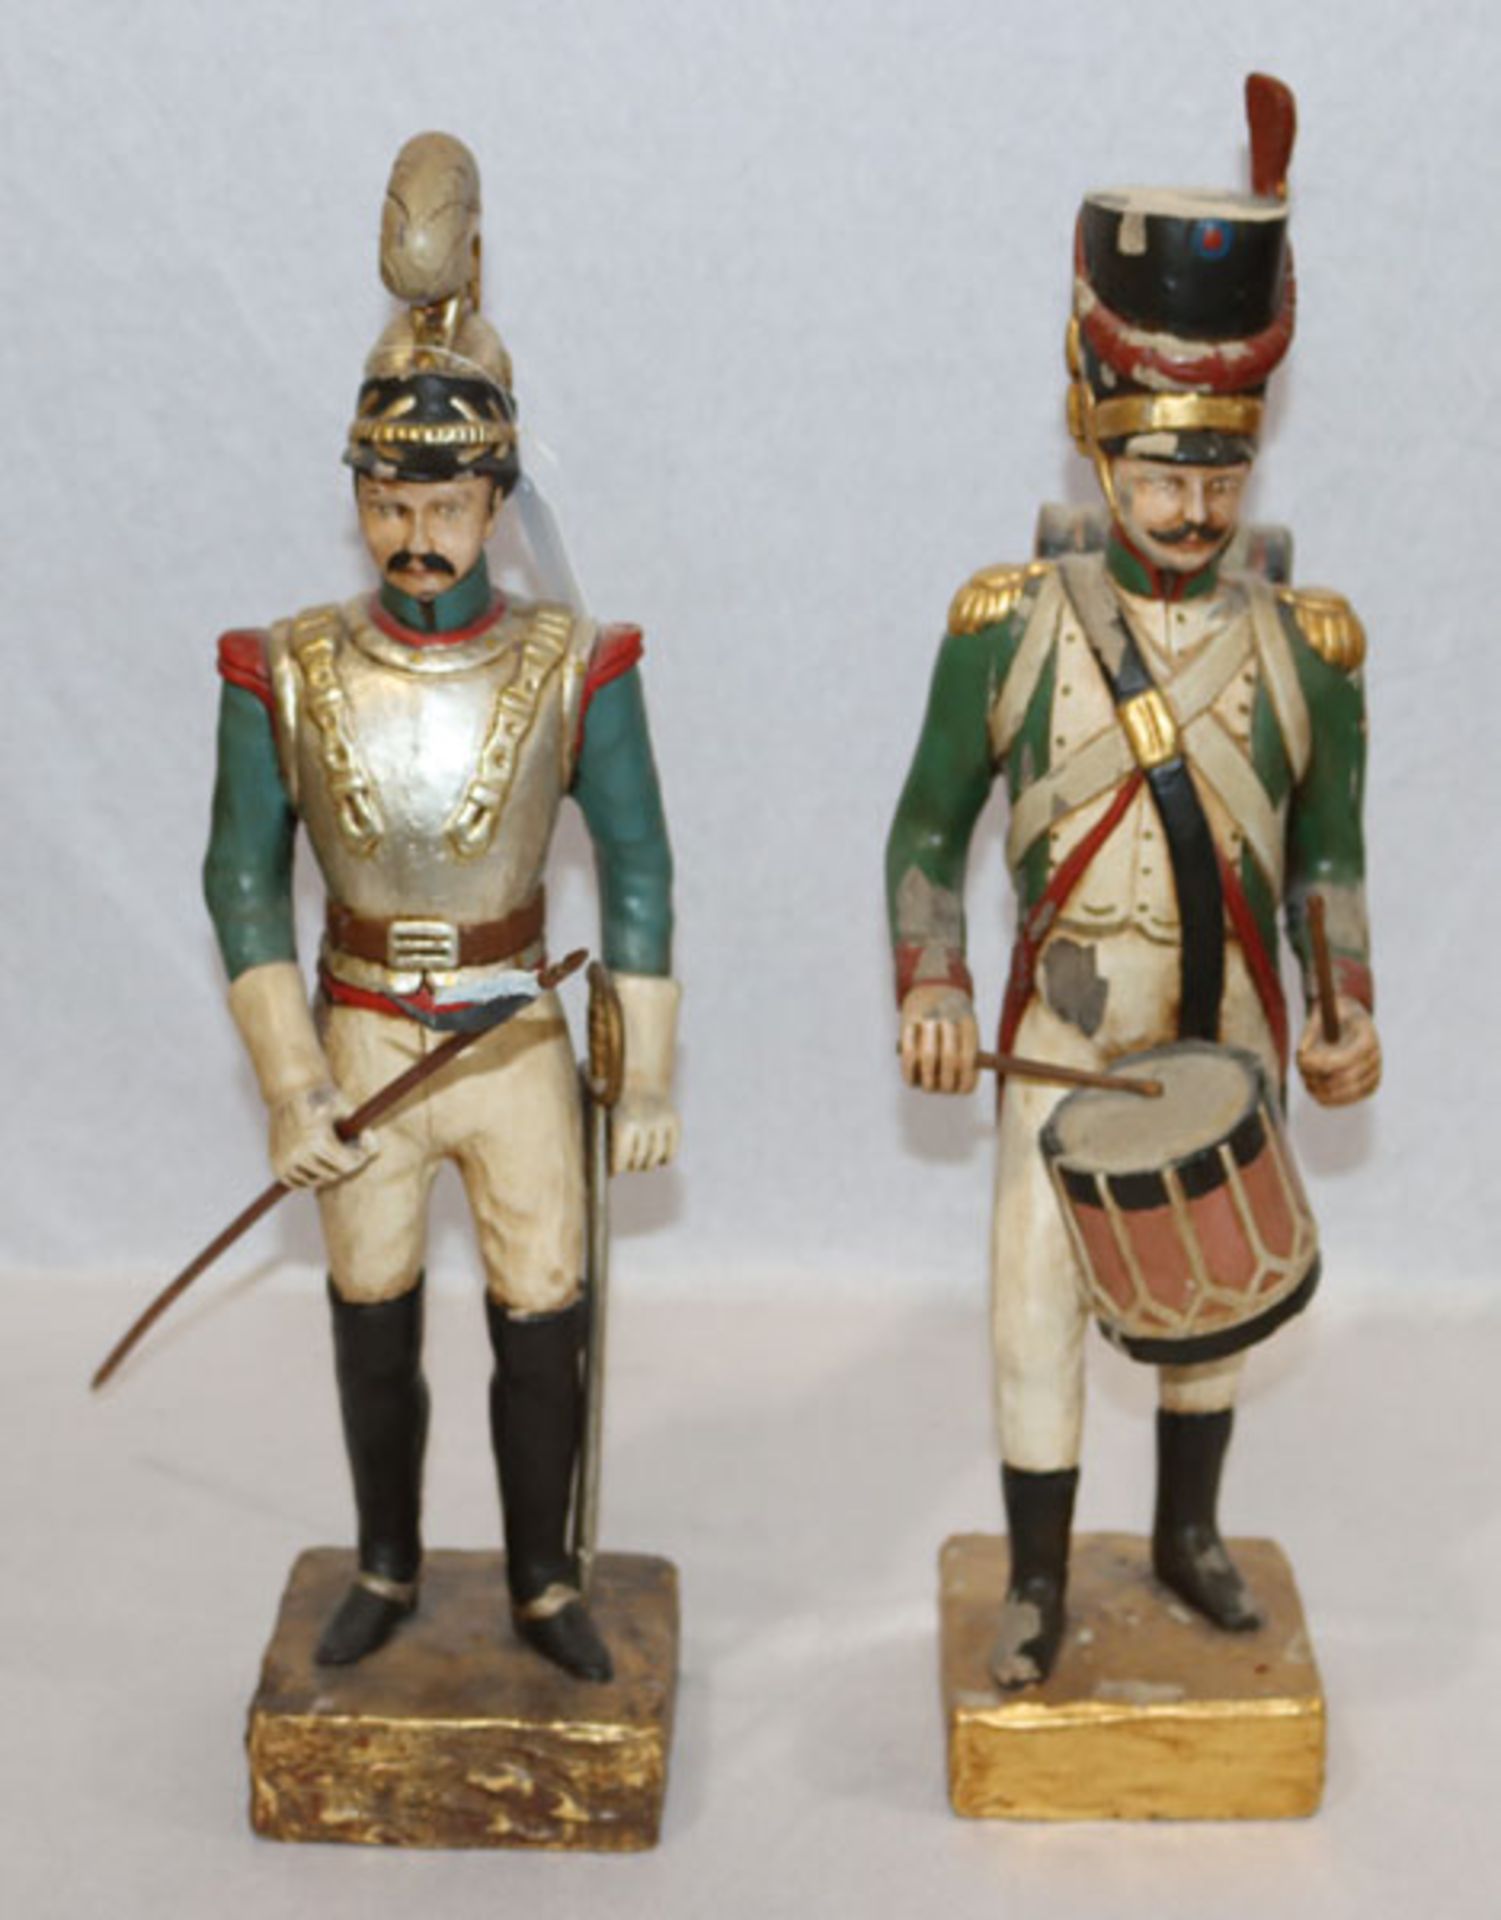 2 Holzfiguren 'Soldaten in Uniform'', farbig gefaßt, starke Farbablösungen, teils bestossen, H 55/56